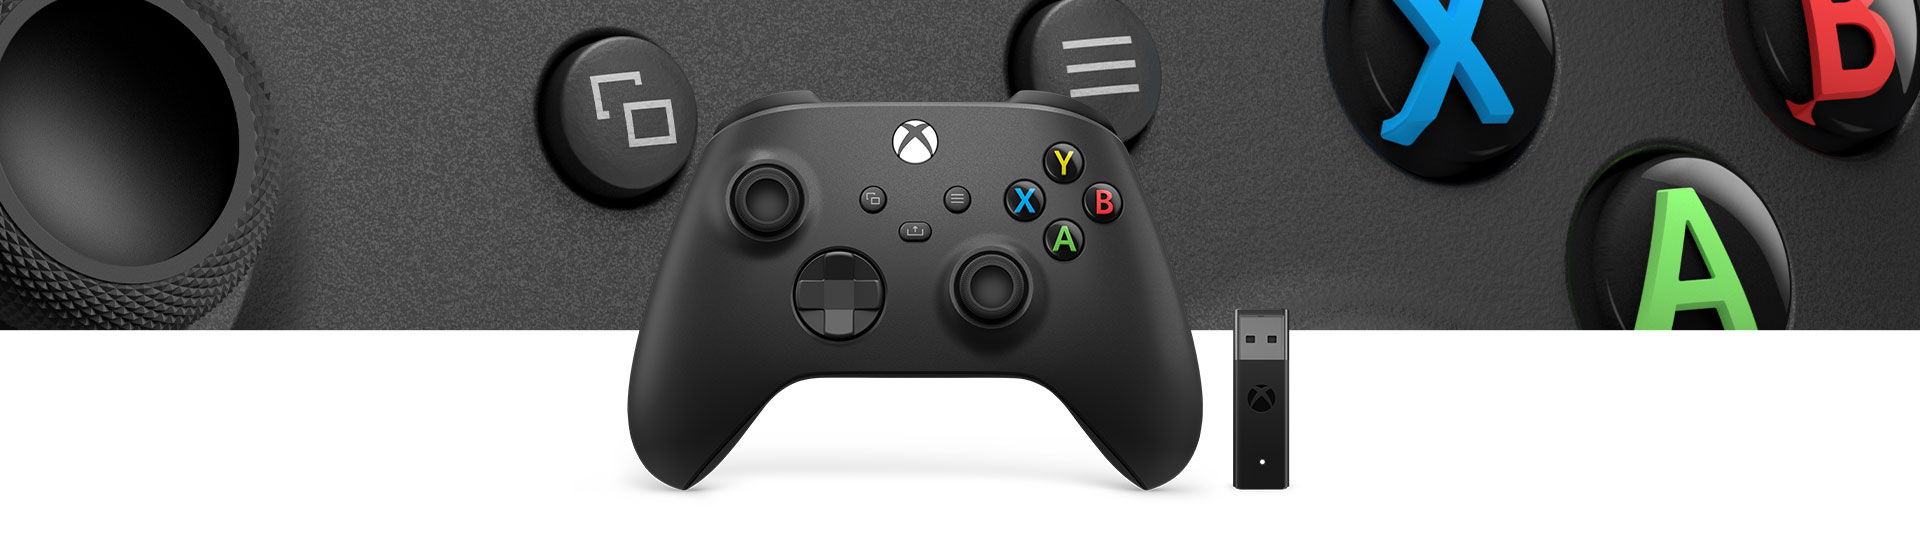 Xbox Wireless Controller + Drahtlosadapter für Windows 10 mit einer Nahaufnahme des Controller-Oberflächenmusters